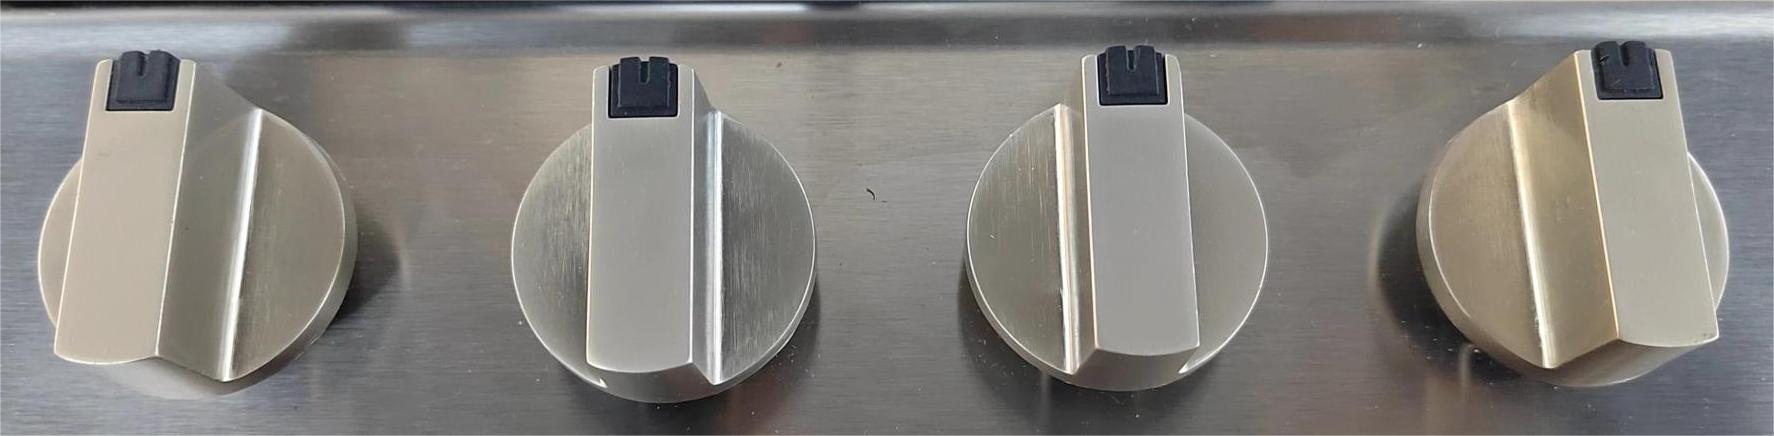 metal knob for gas hob